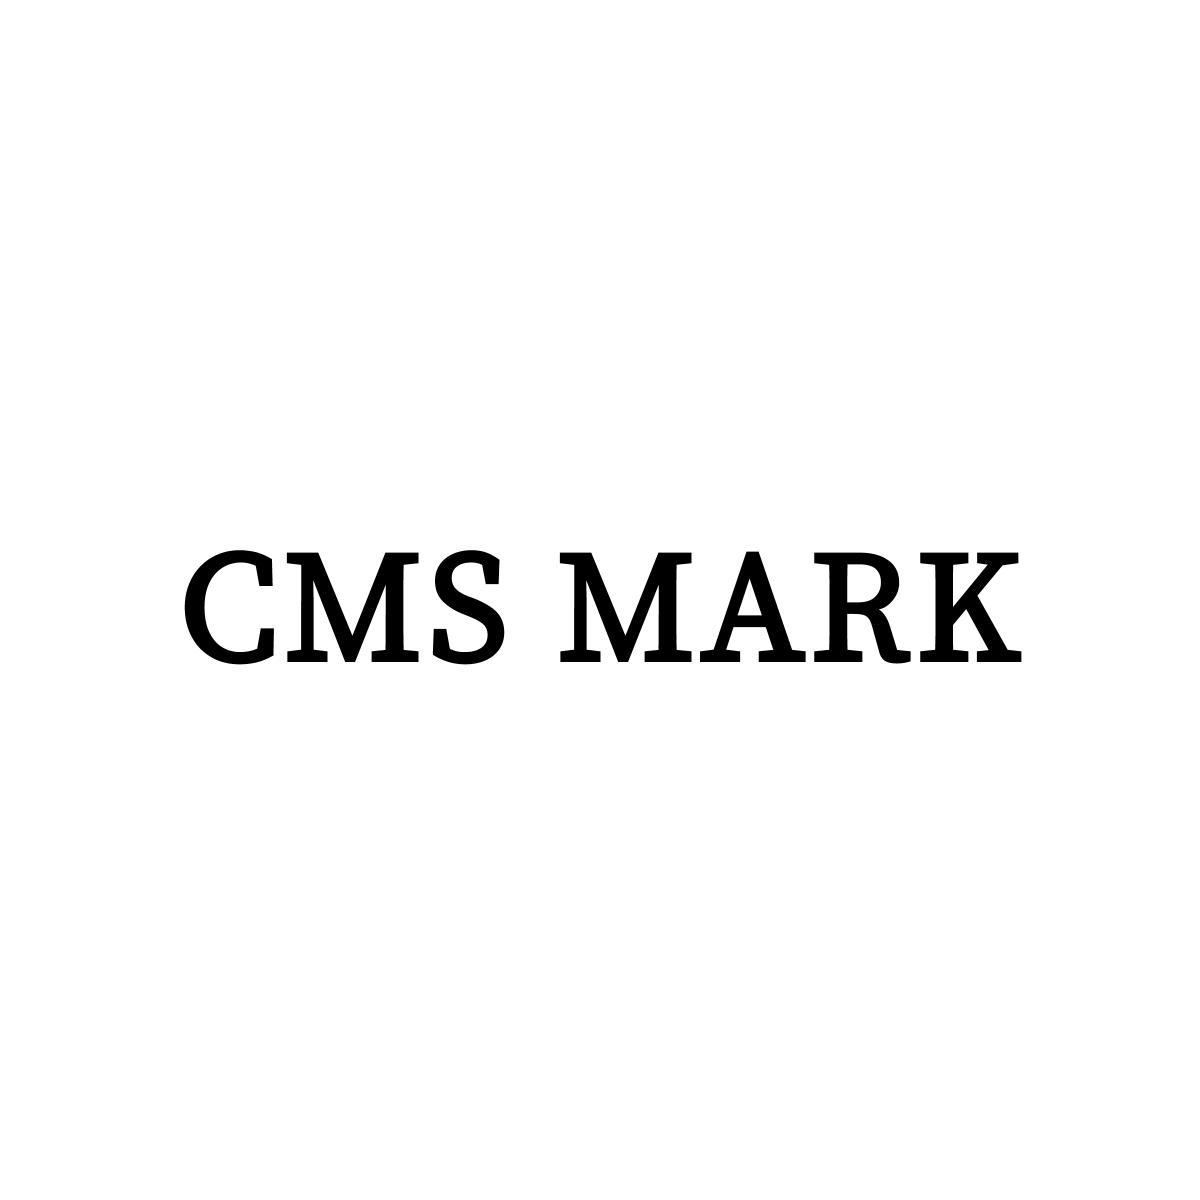 CMS MARK